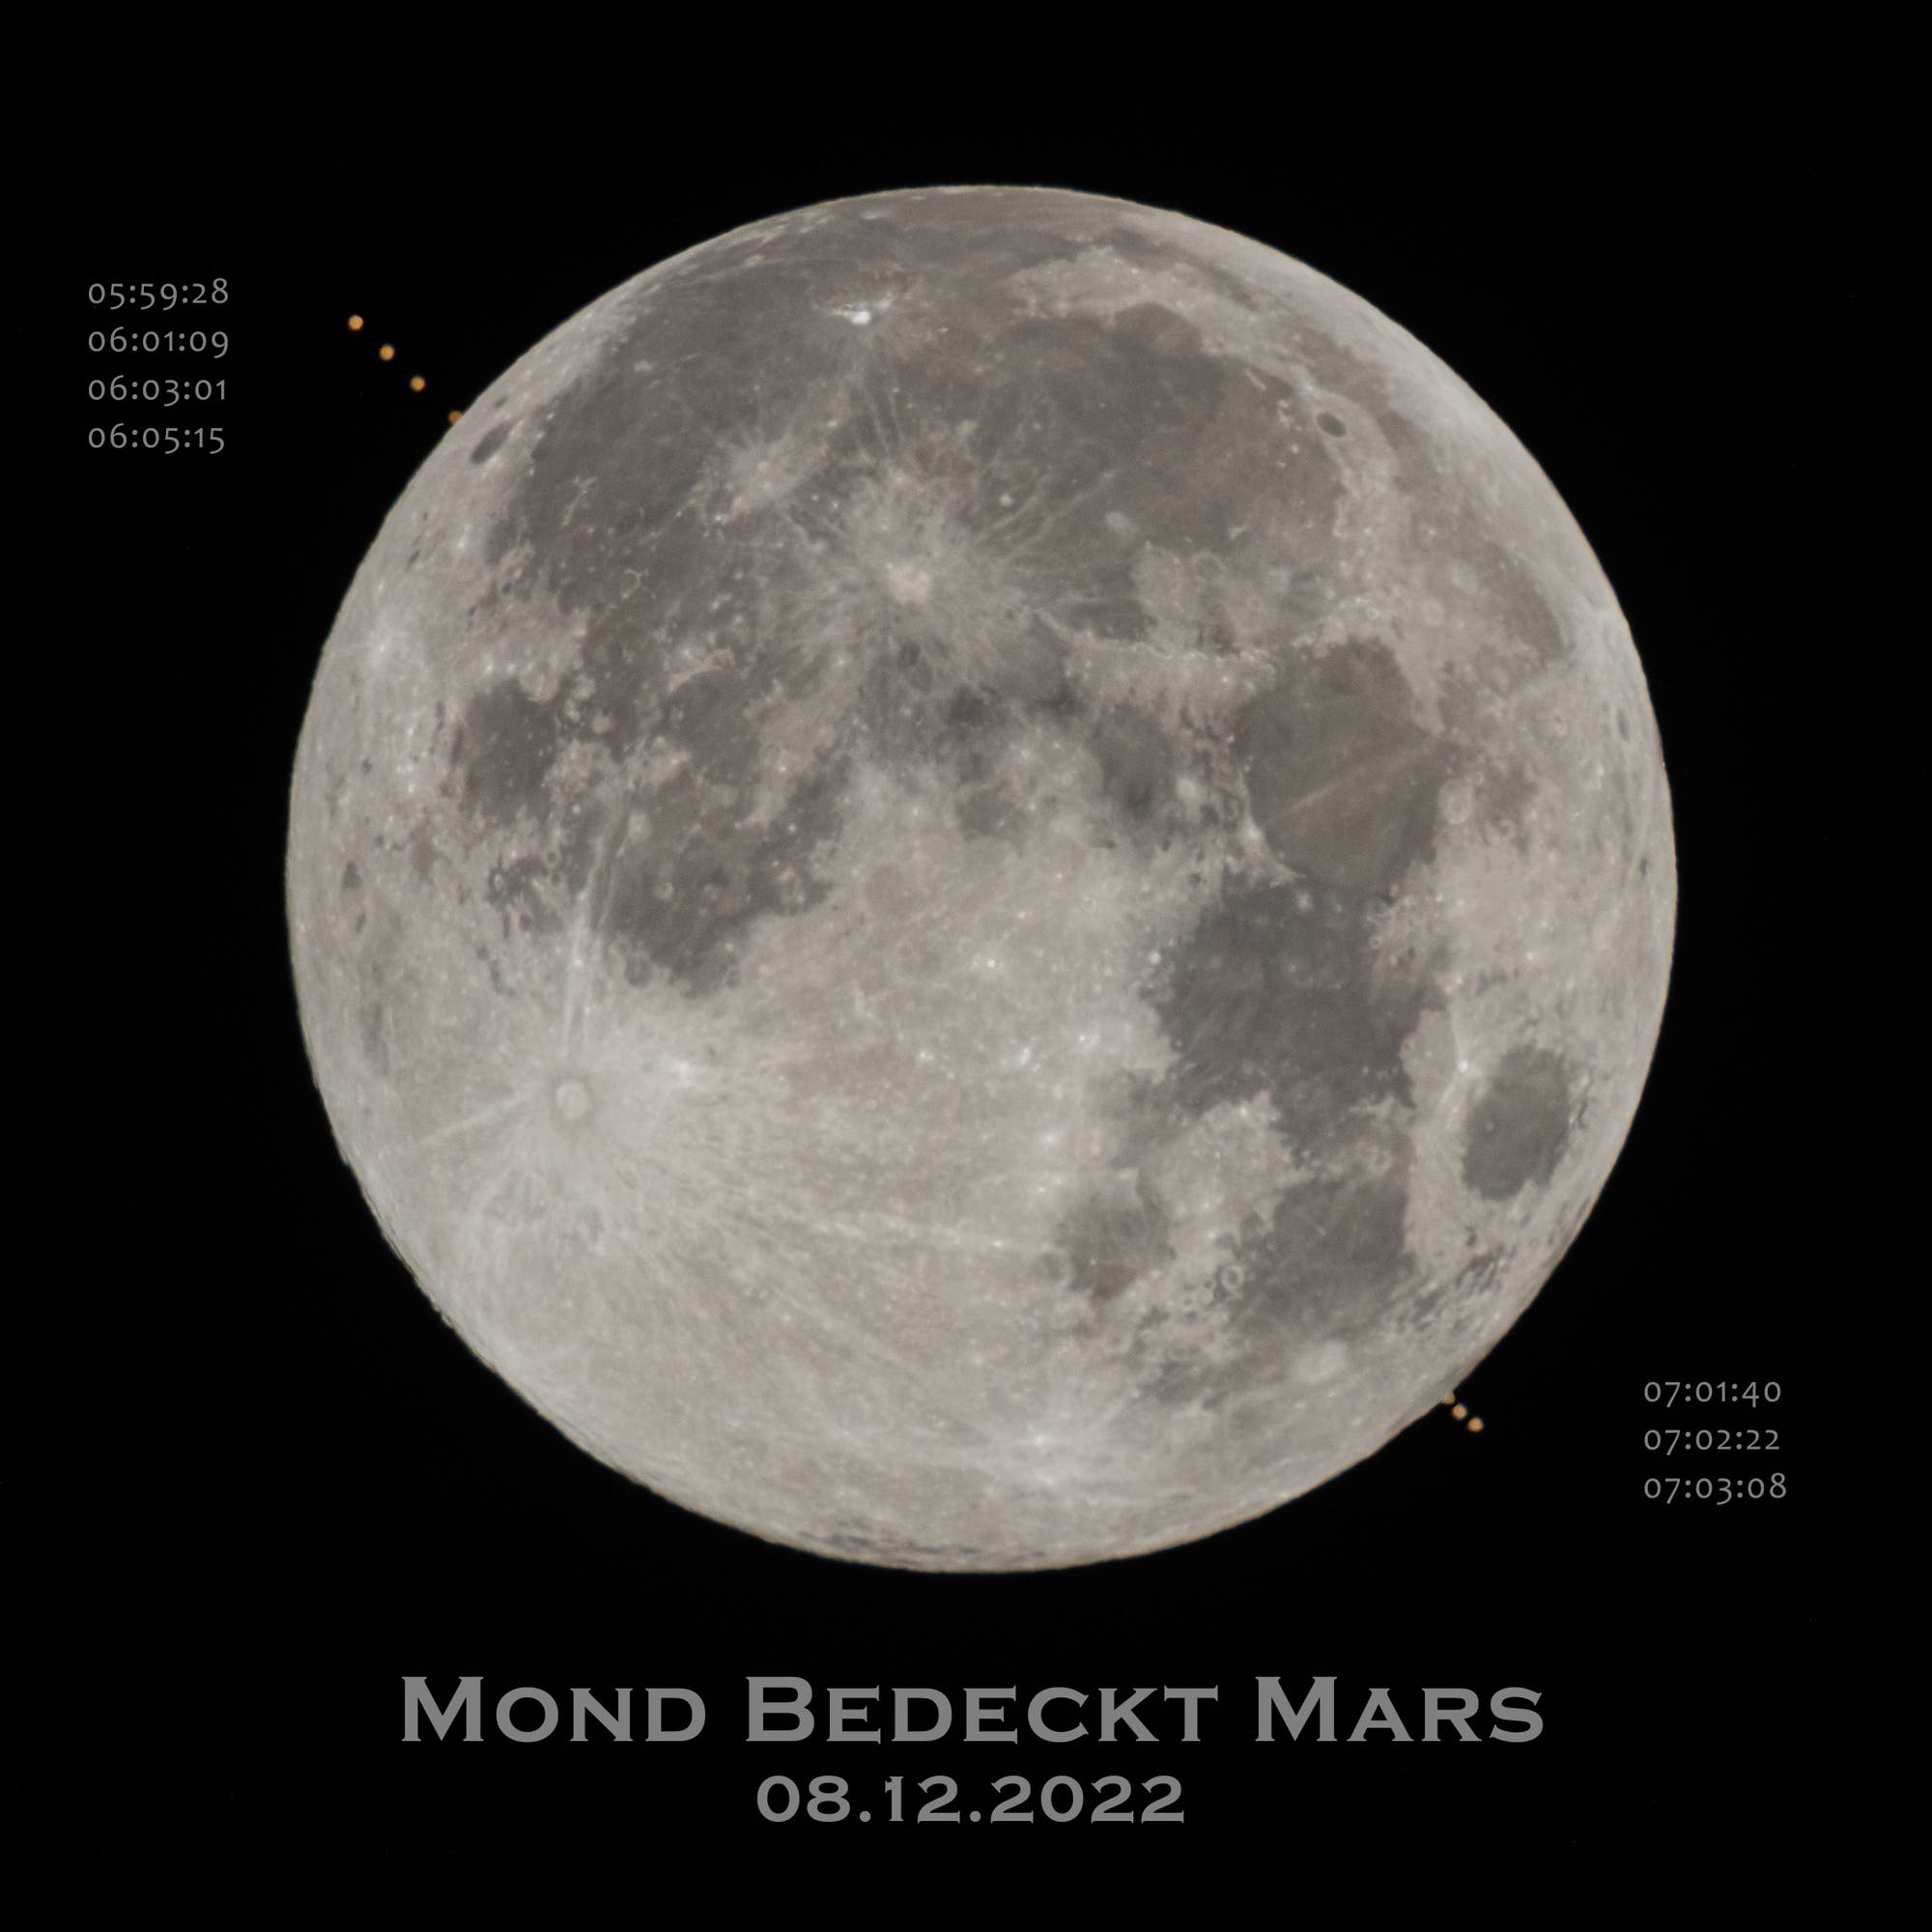 Mond bedeckt Mars - Collage